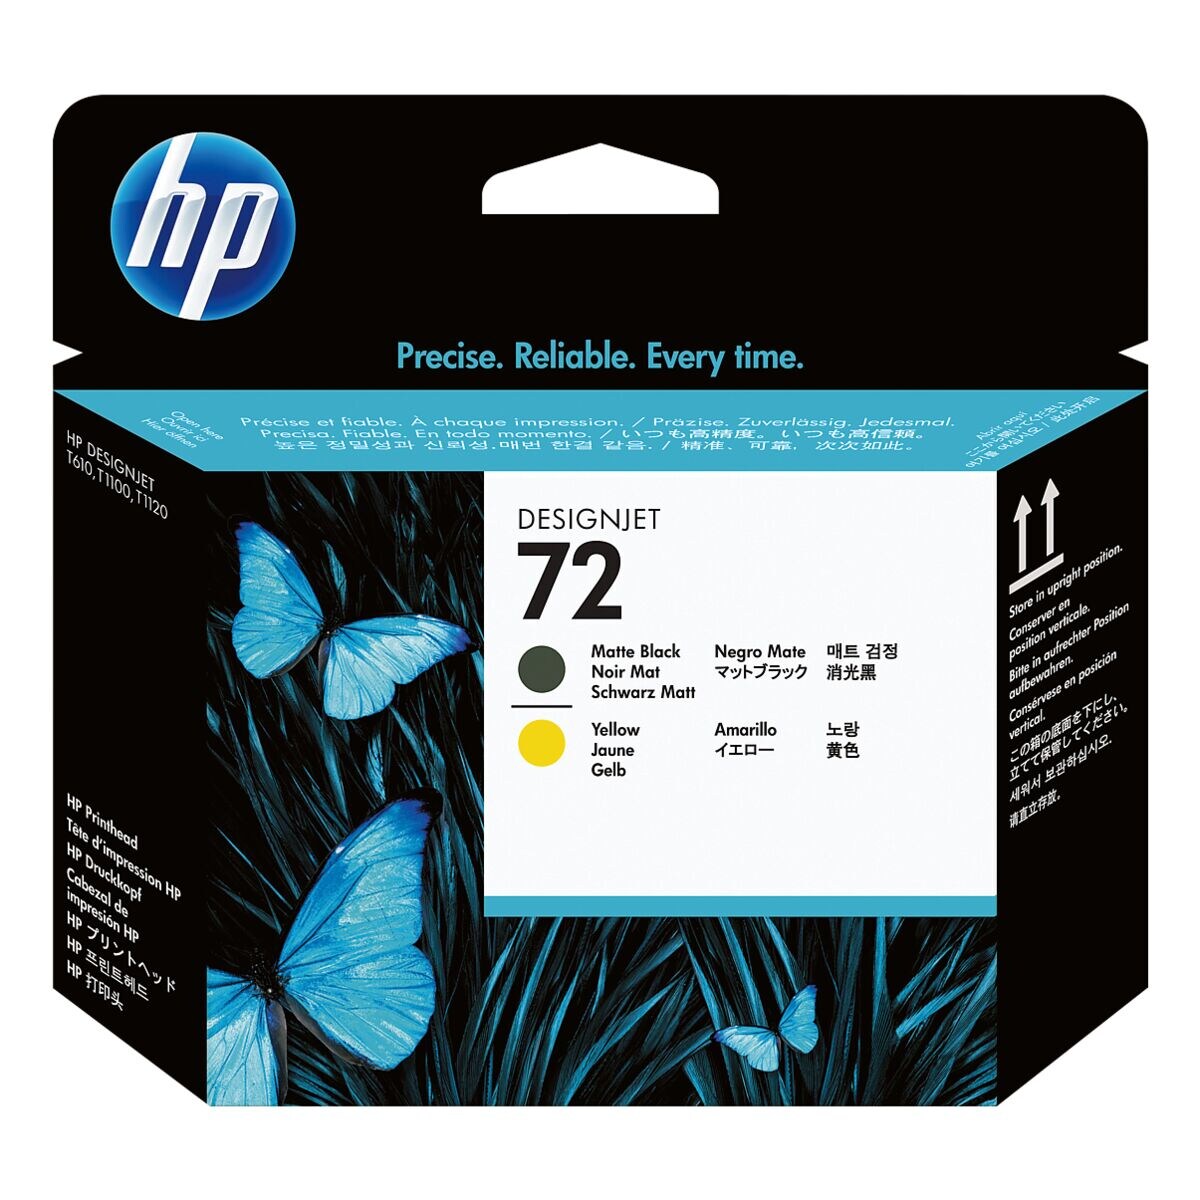 HP printkop HP 72, zwart / geel - HP C9384A